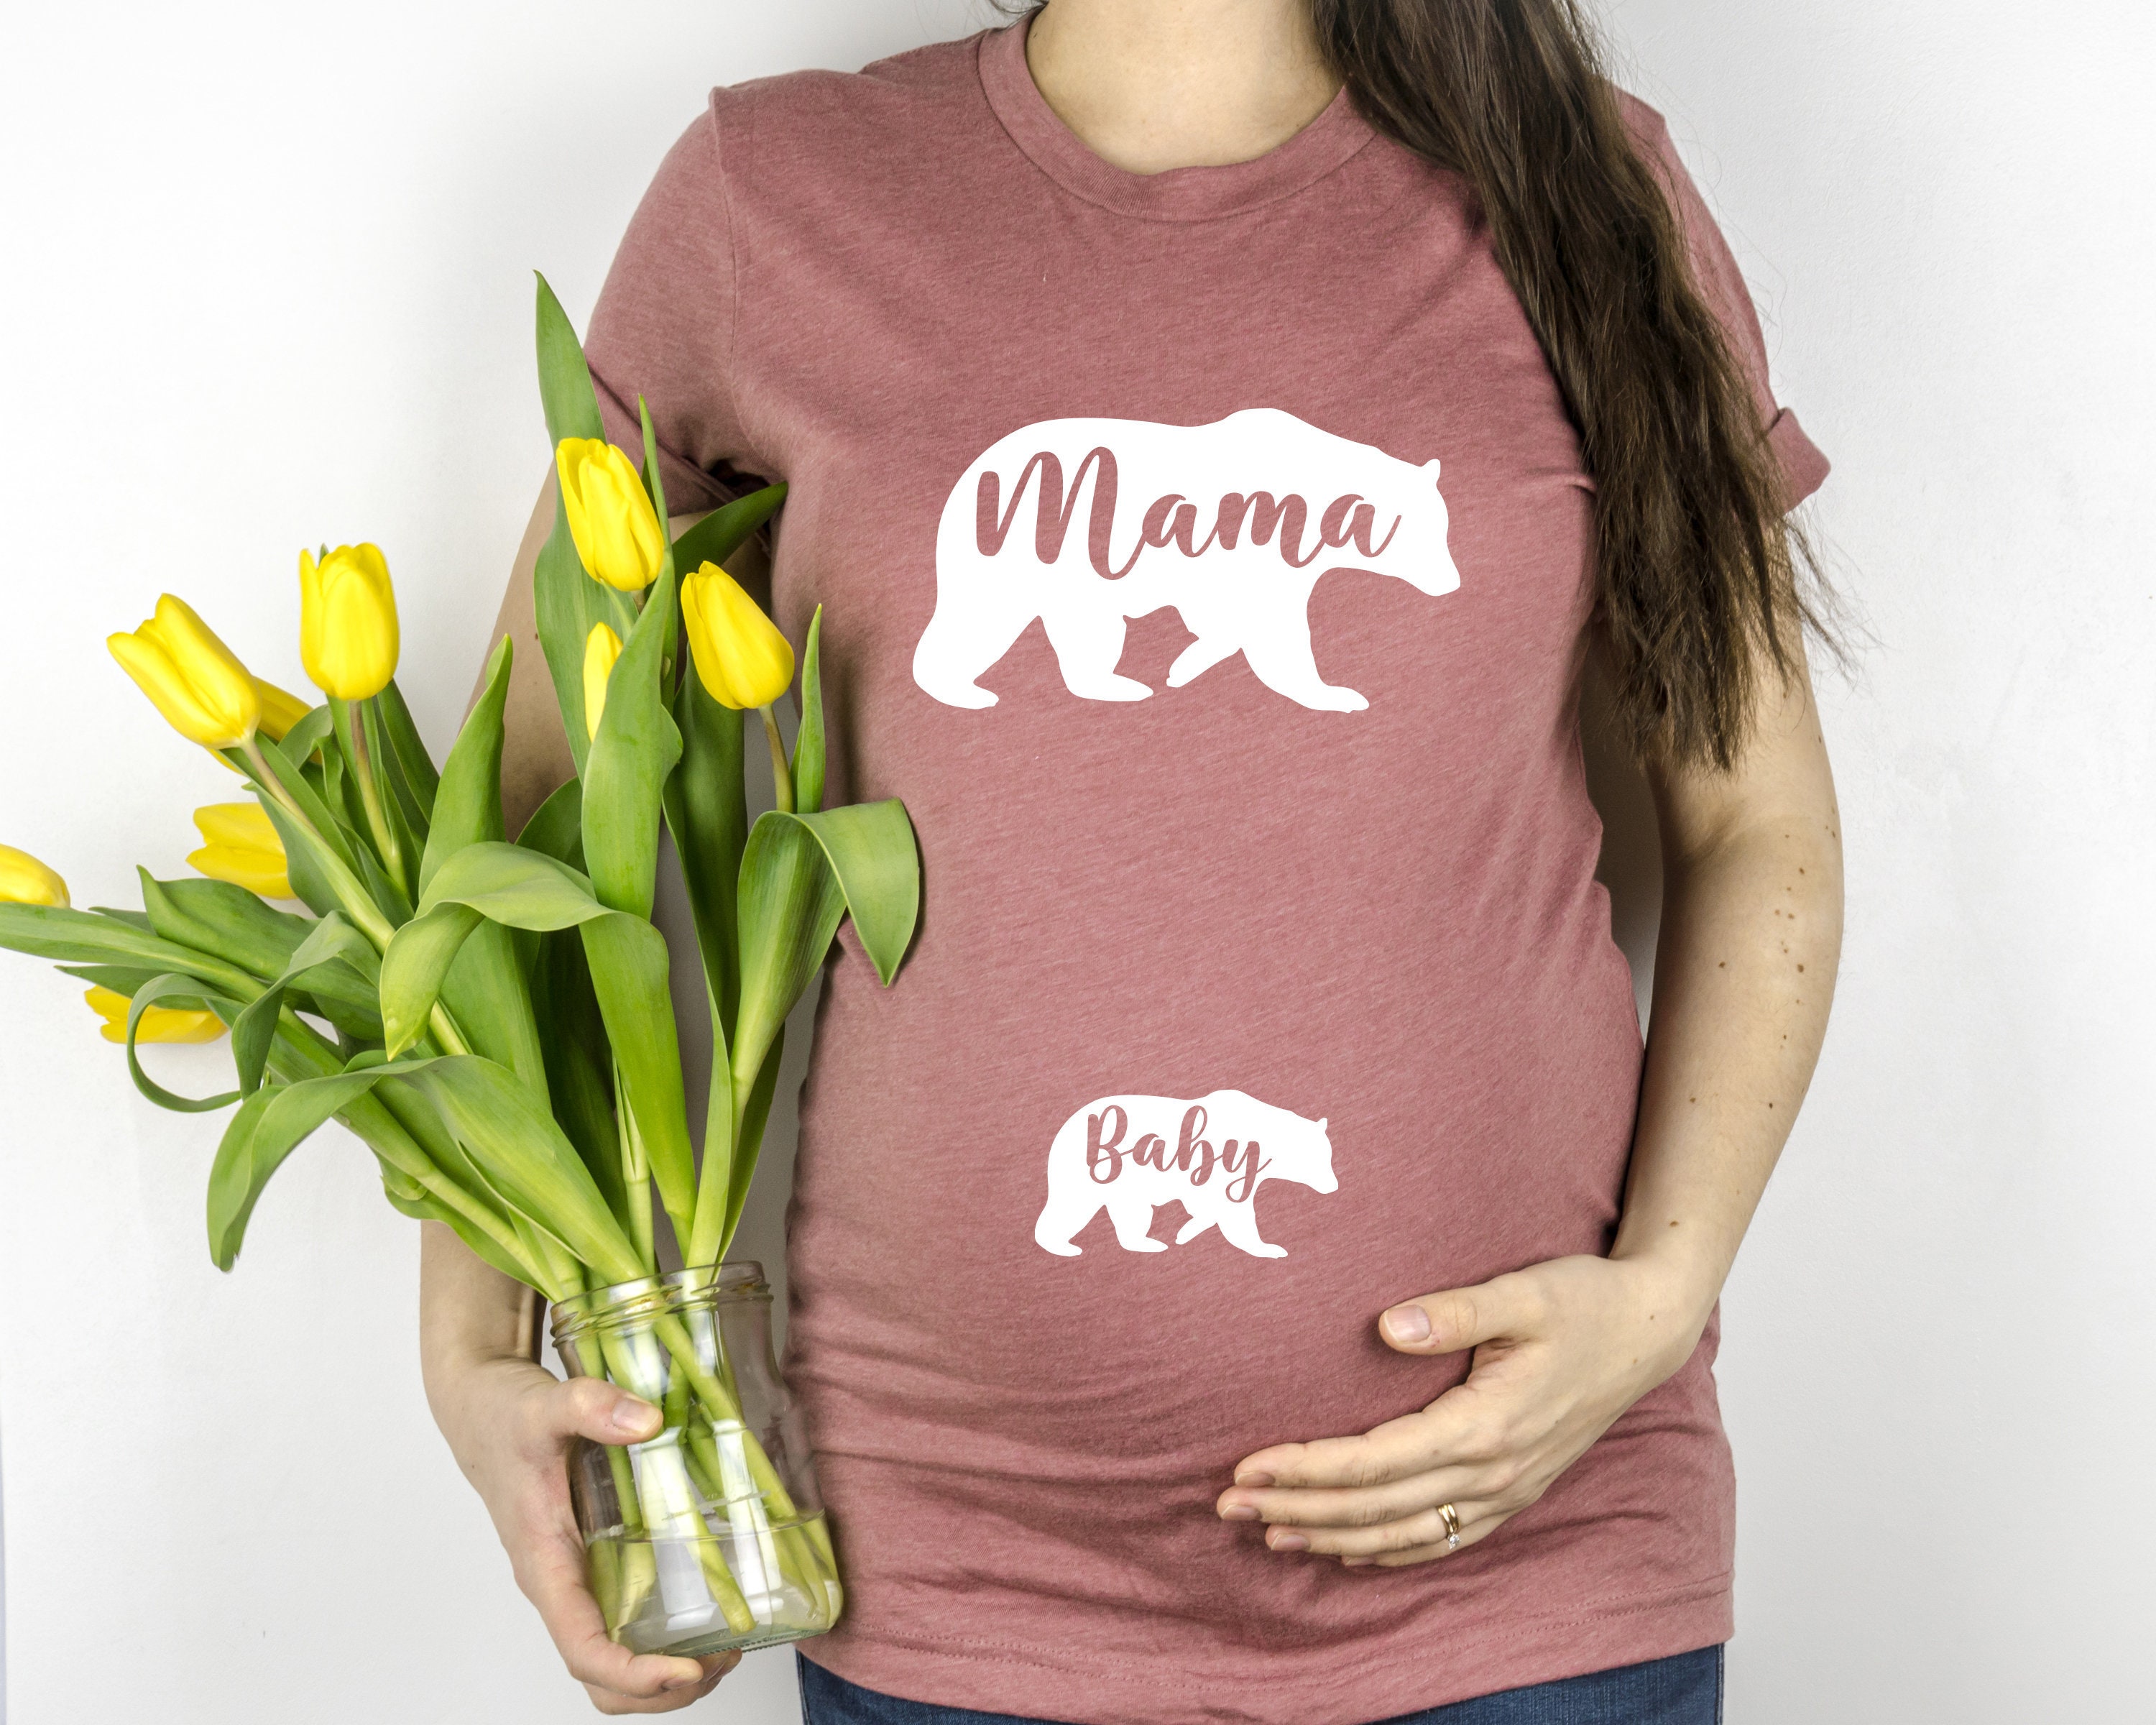 Shop Pregnancy Shirts at BirchBearCo